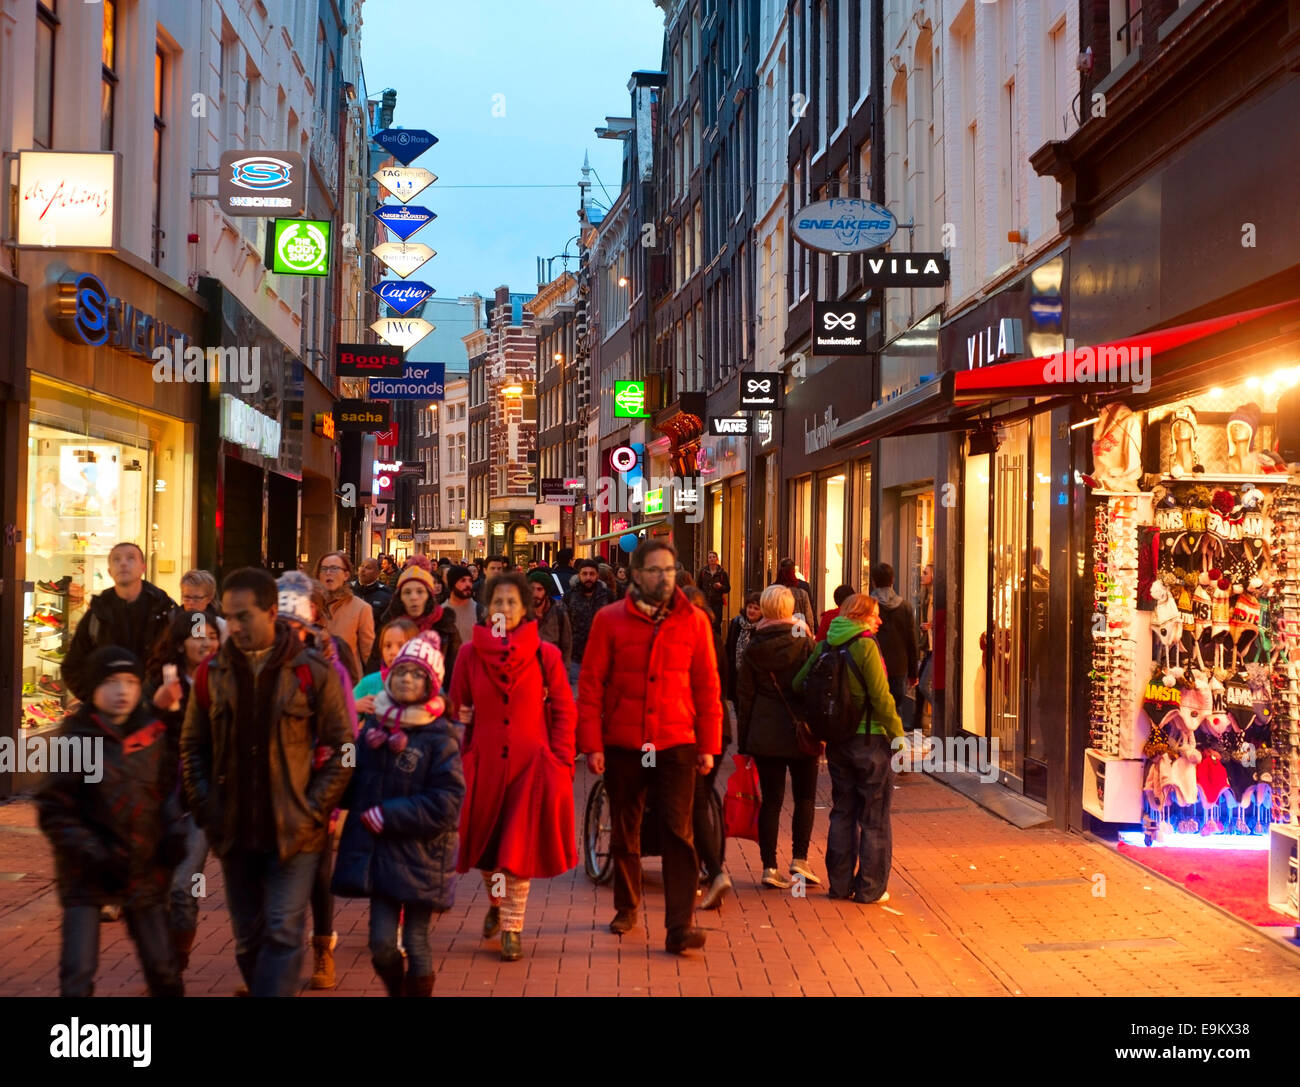 Des personnes non identifiées, marche sur Kalverstraat - principale rue commerçante d'Amsterdam. Banque D'Images